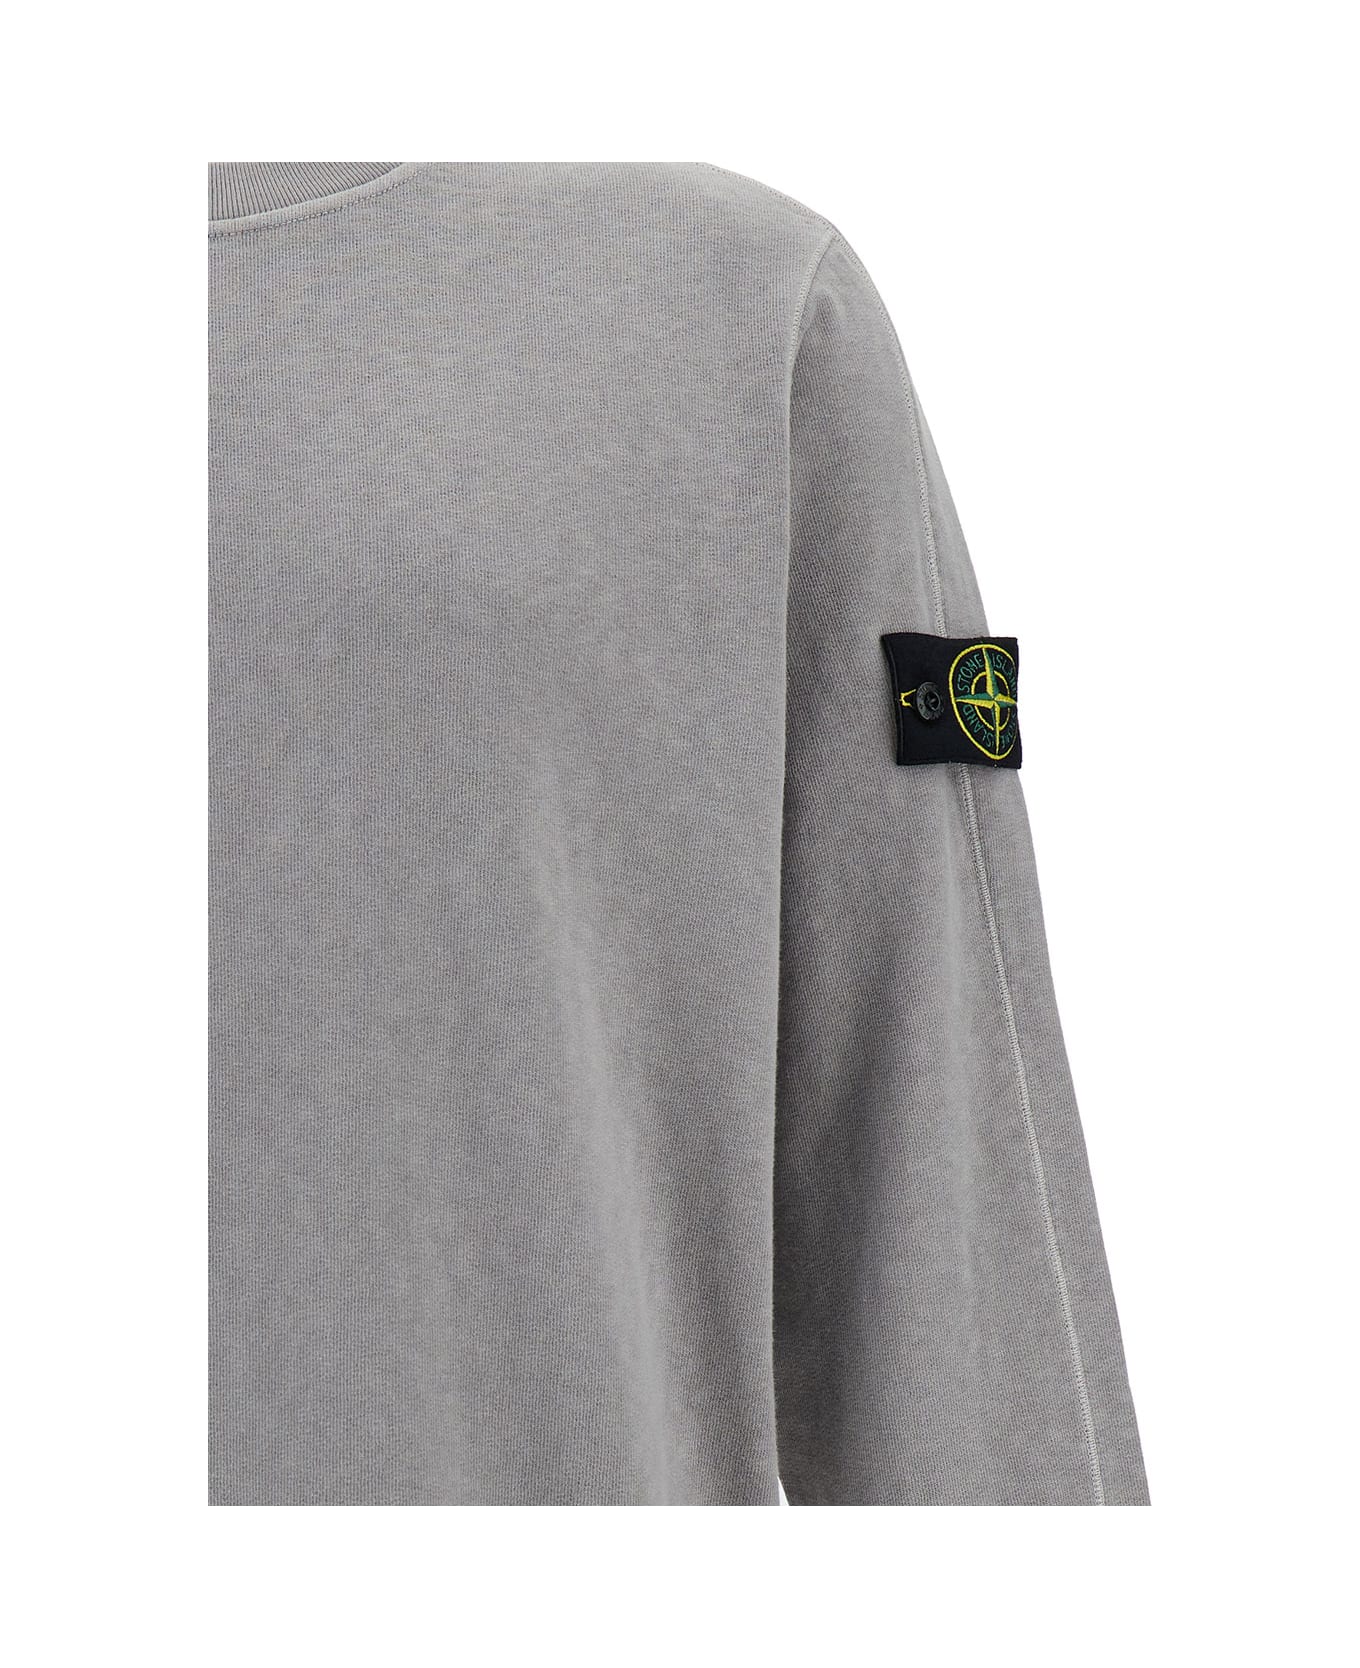 Stone Island Grey Crewneck Sweatshirt With Logo Patch In Cotton Man - Grey フリース